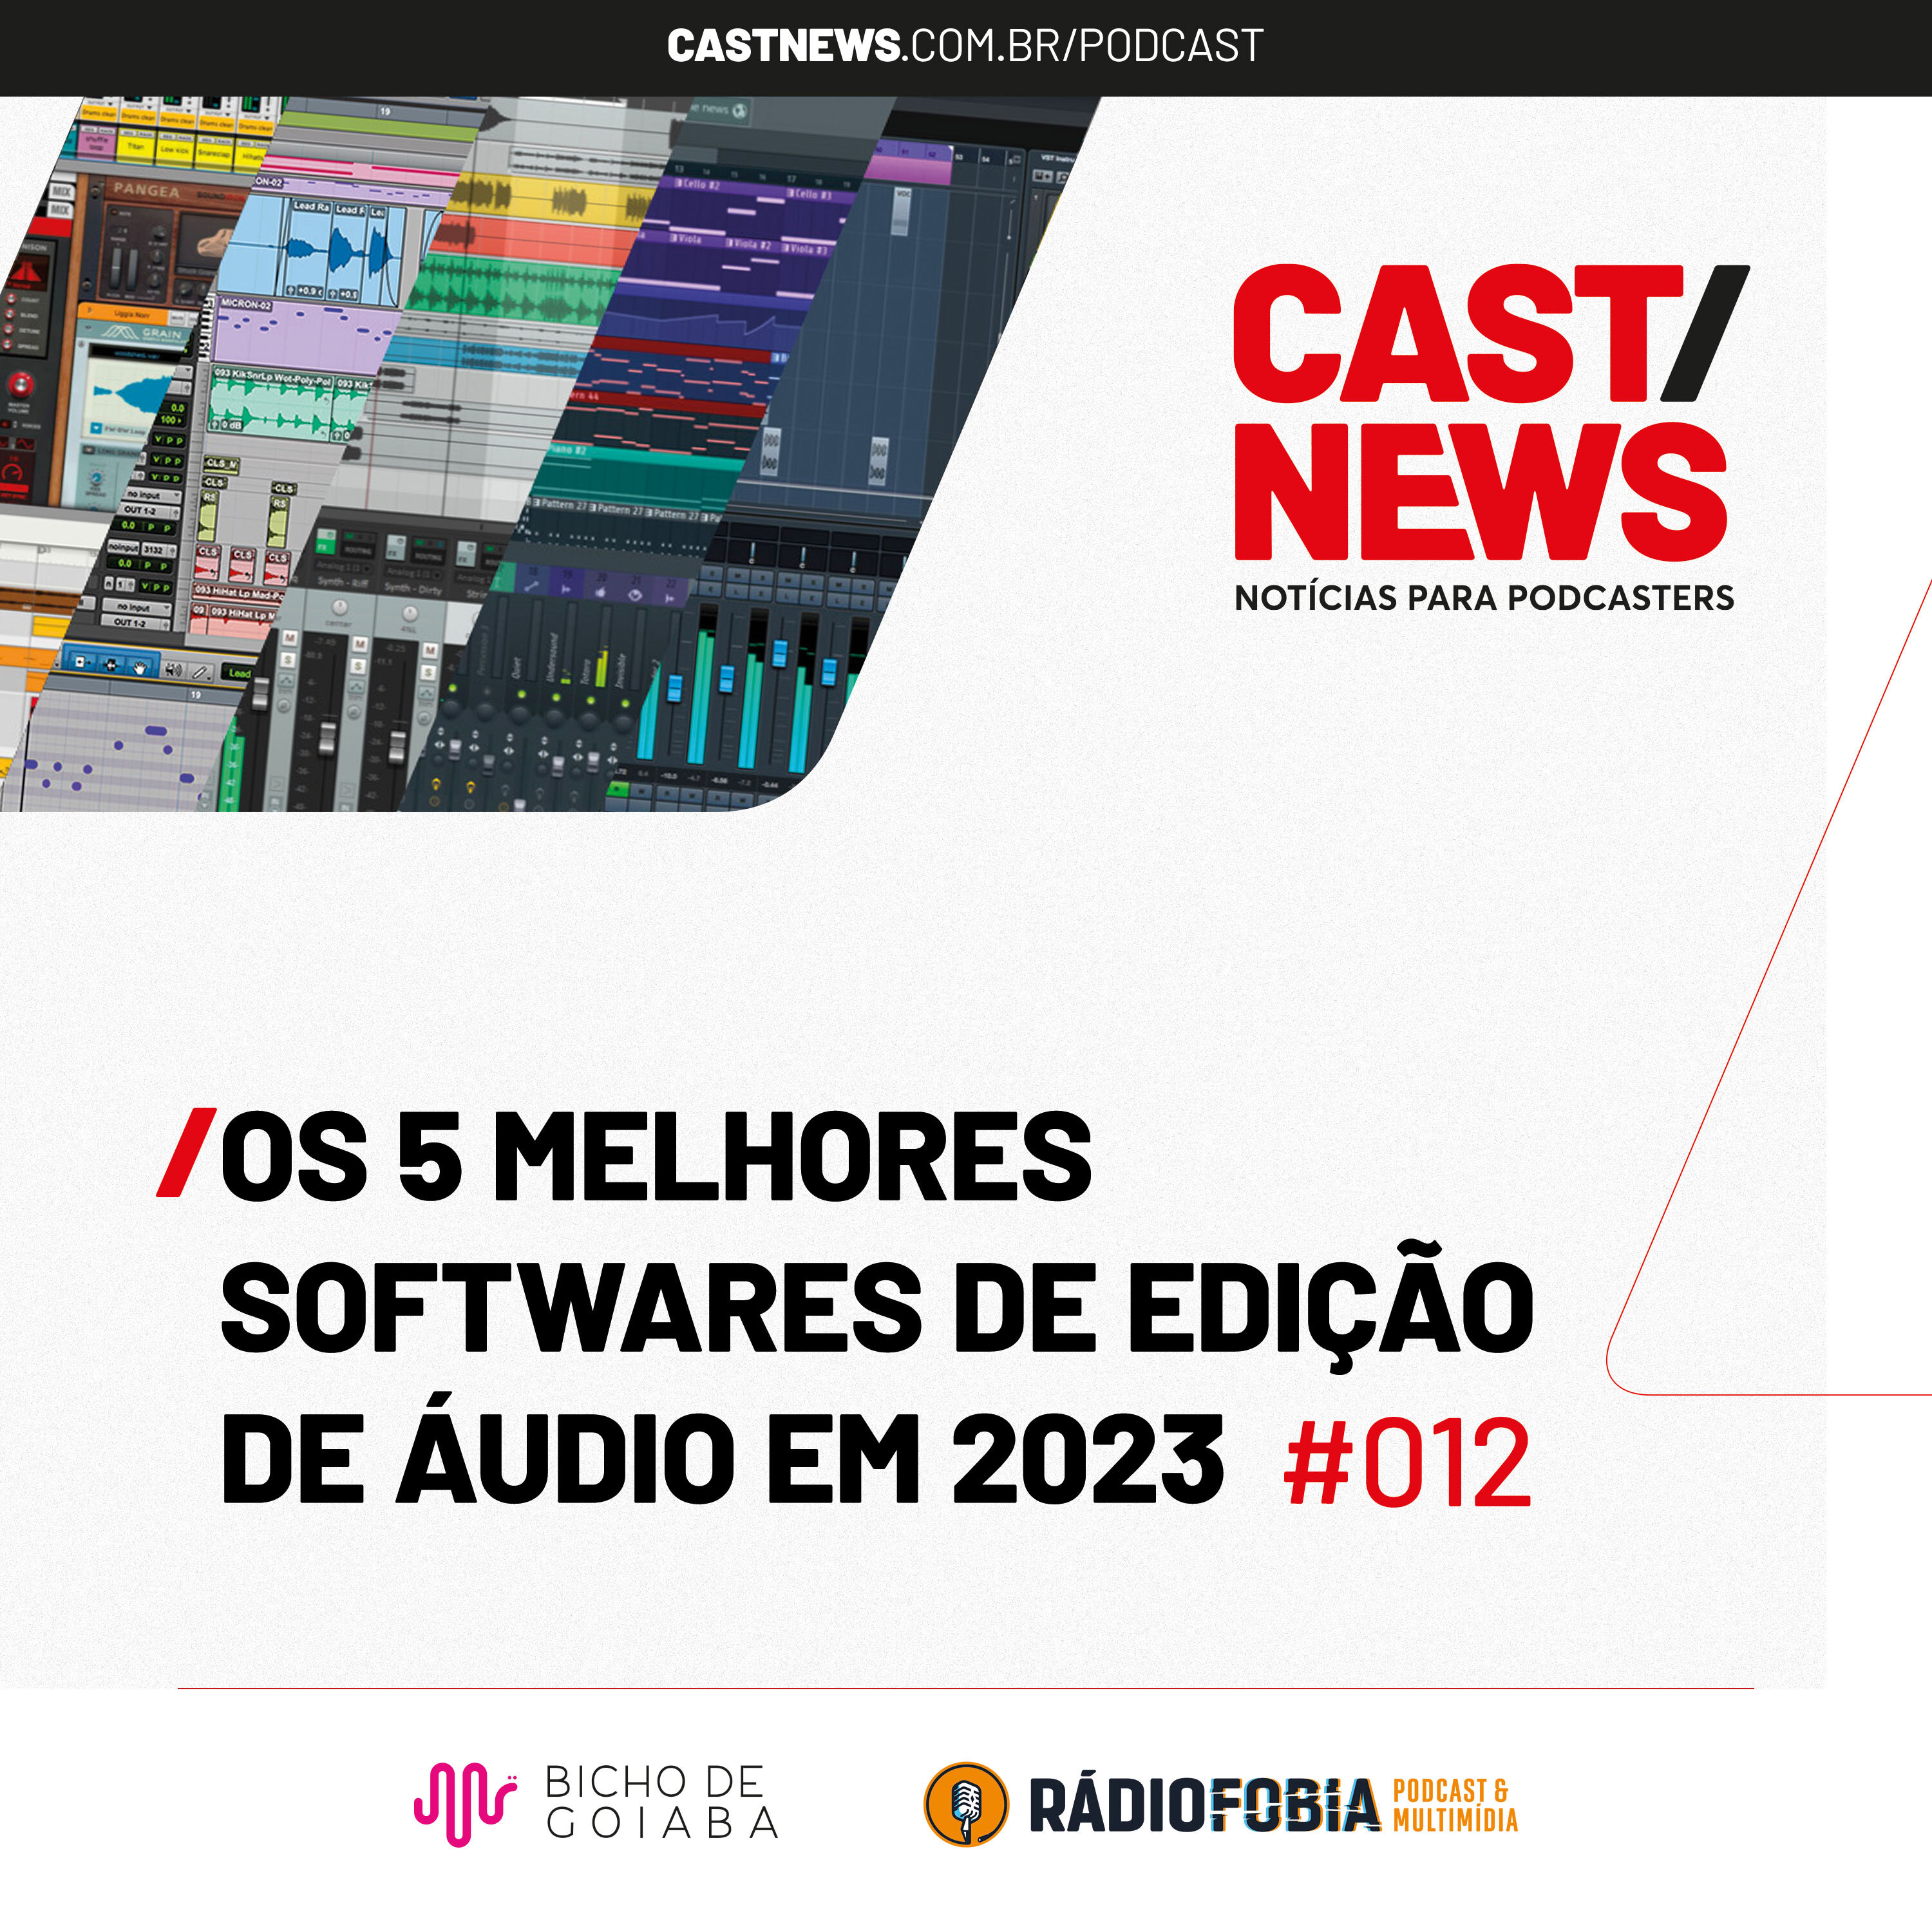 CASTNEWS #012 - Os 5 melhores softwares de edição de áudio em 2023